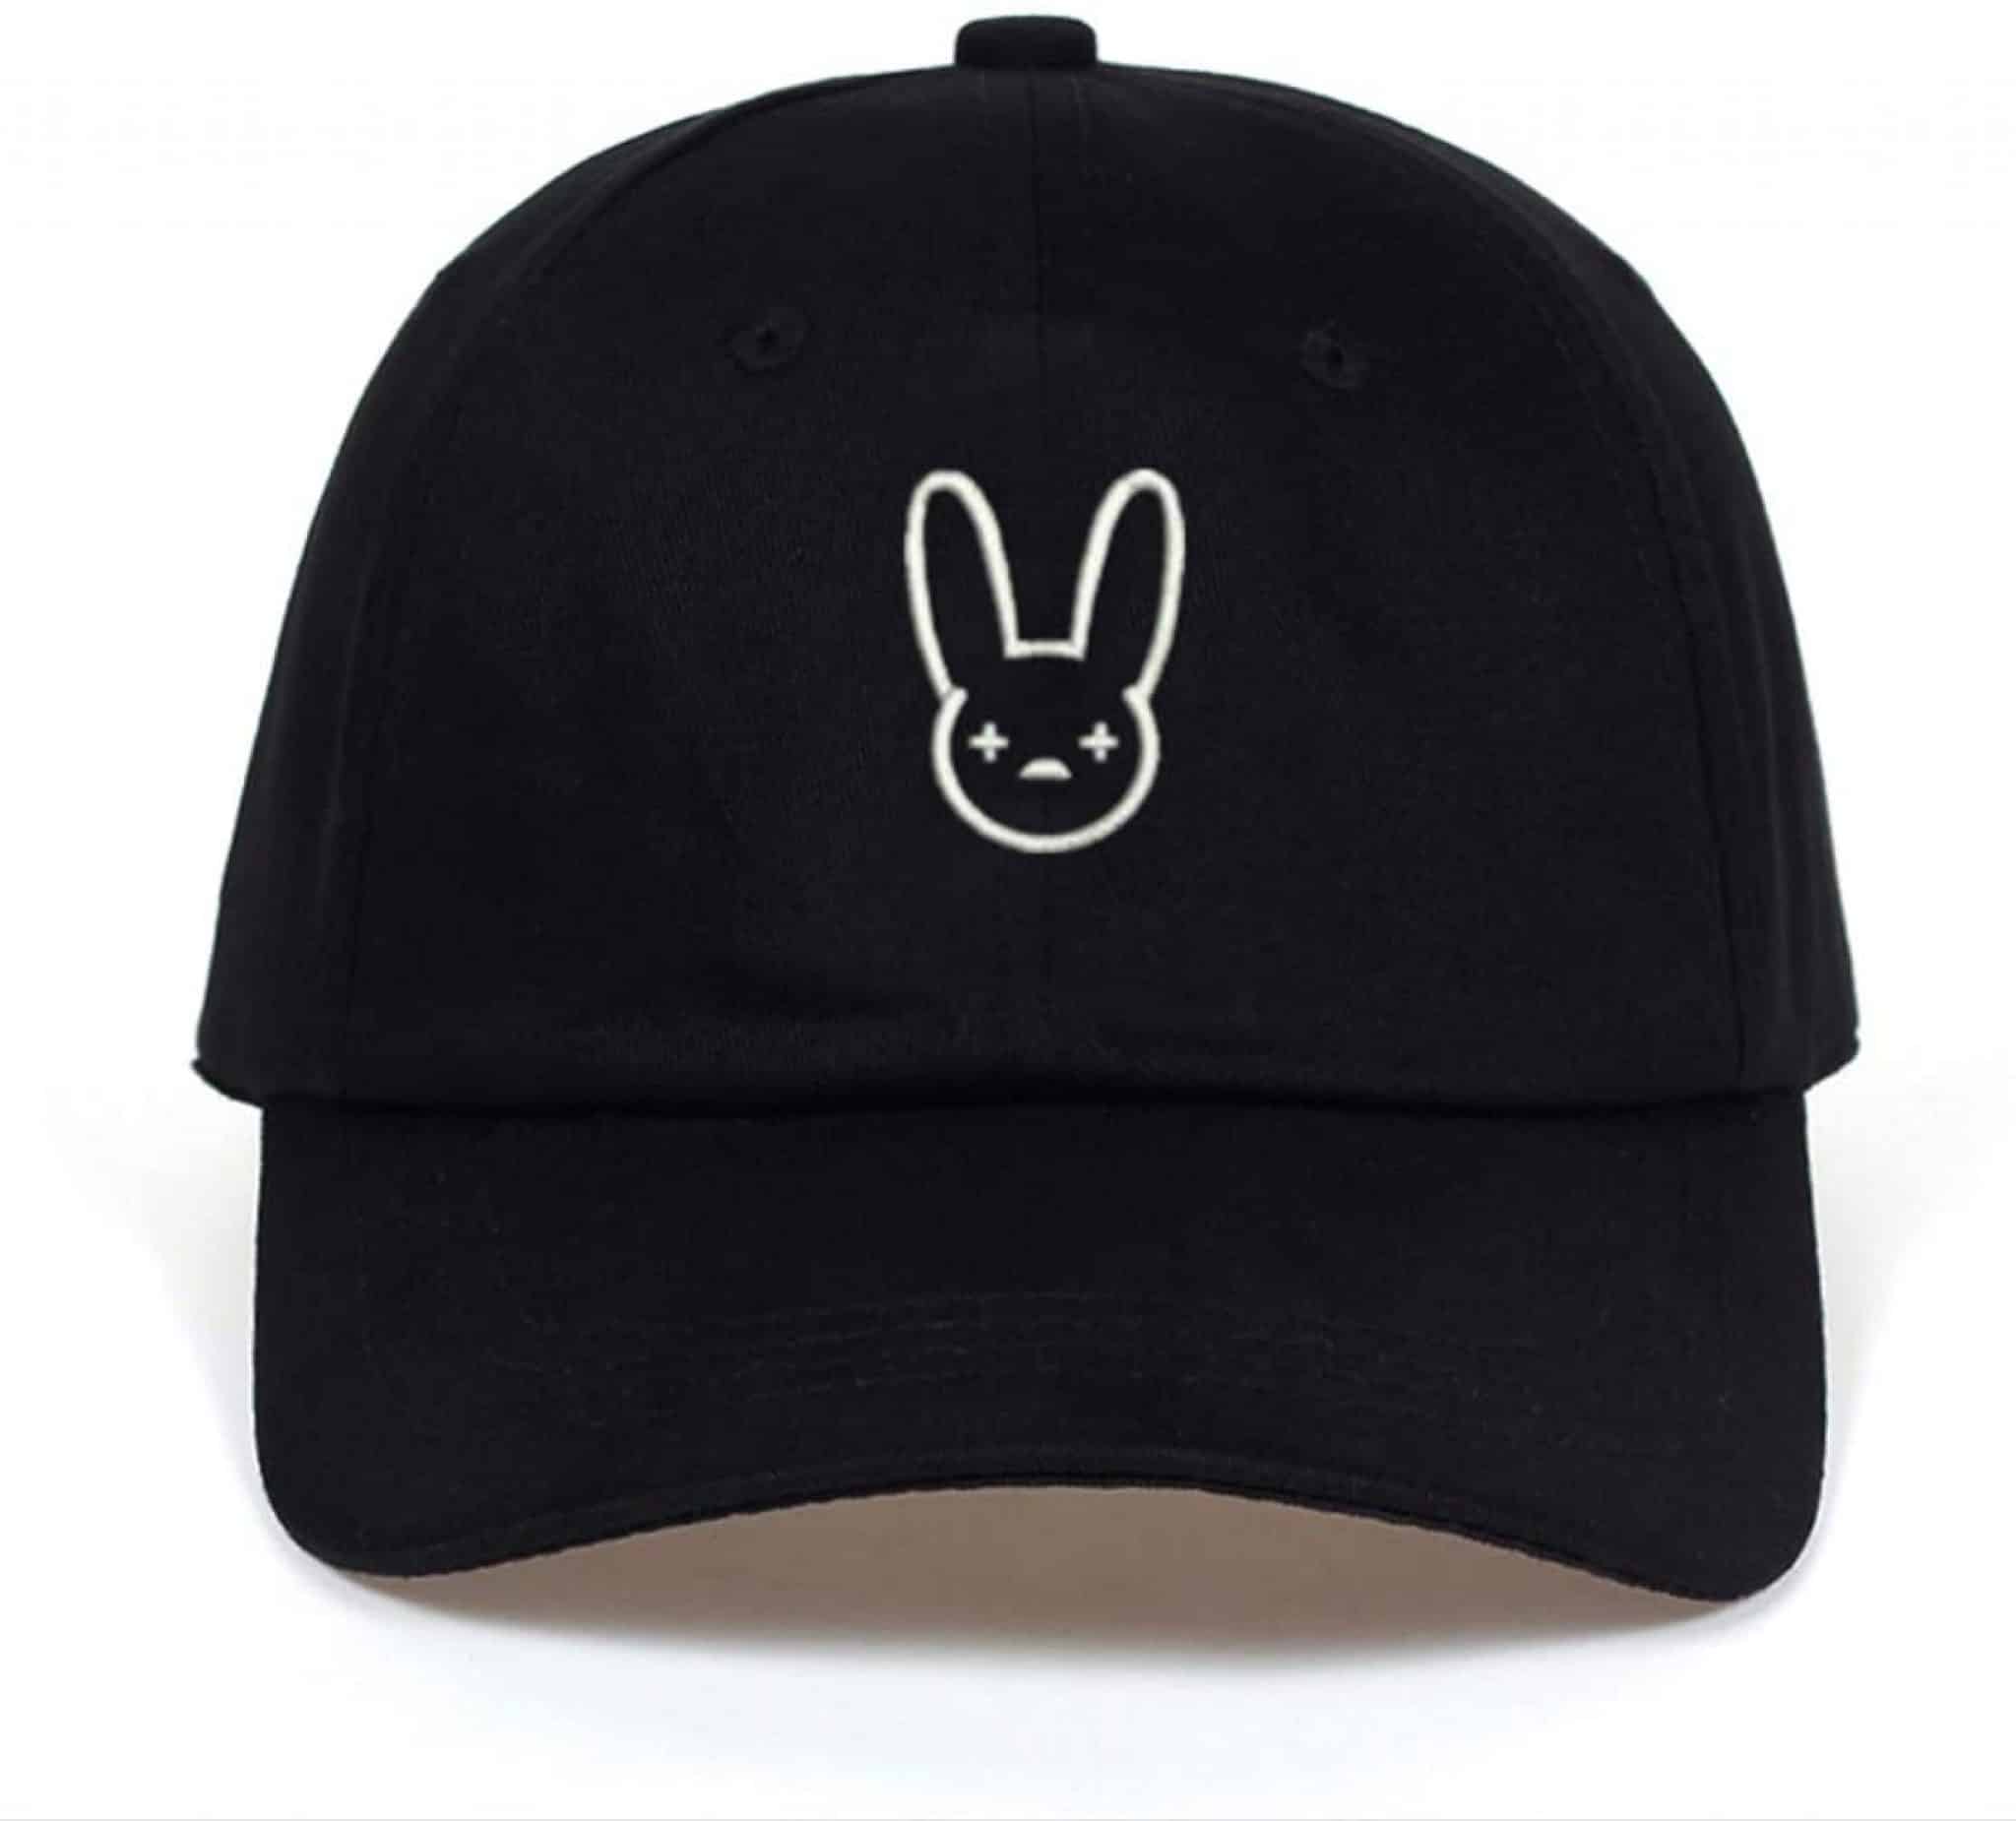 Bunny hat Black шапка. Кролик в кепке. Бейсболка с кроликом Роджером. Bad hat